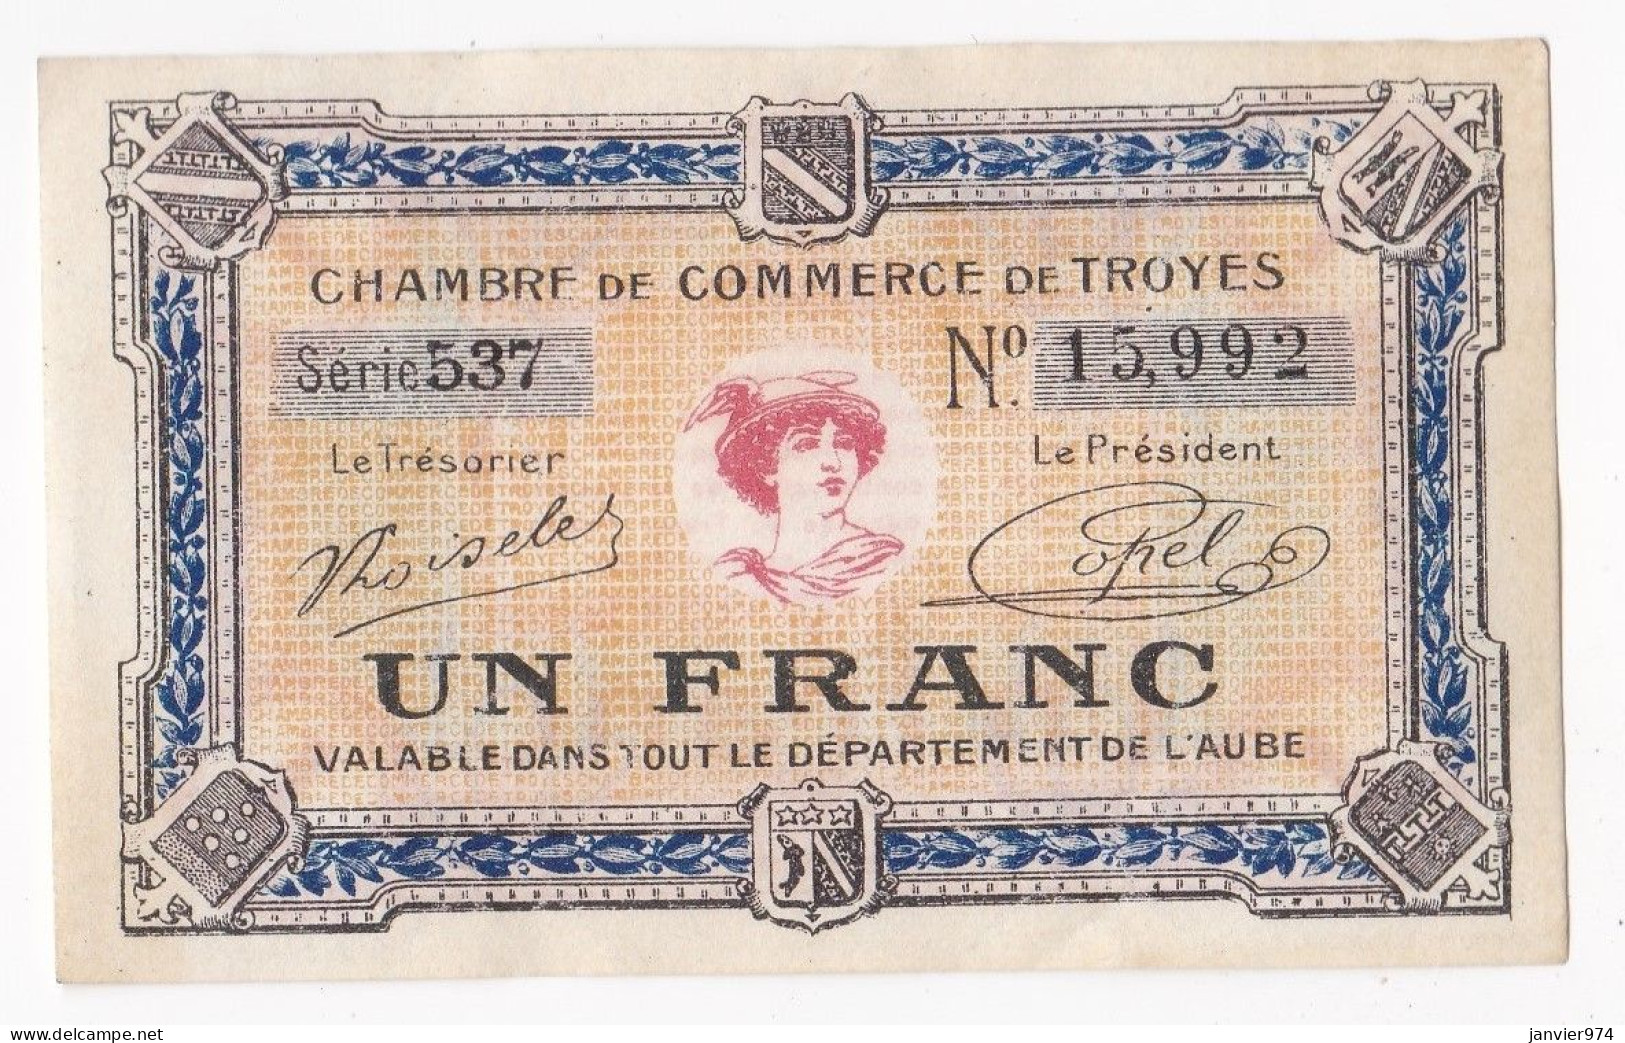 Aude . Chambre De Commerce De Troyes 1 Franc 1926 Serie 537 . N° 15,992 - Chamber Of Commerce